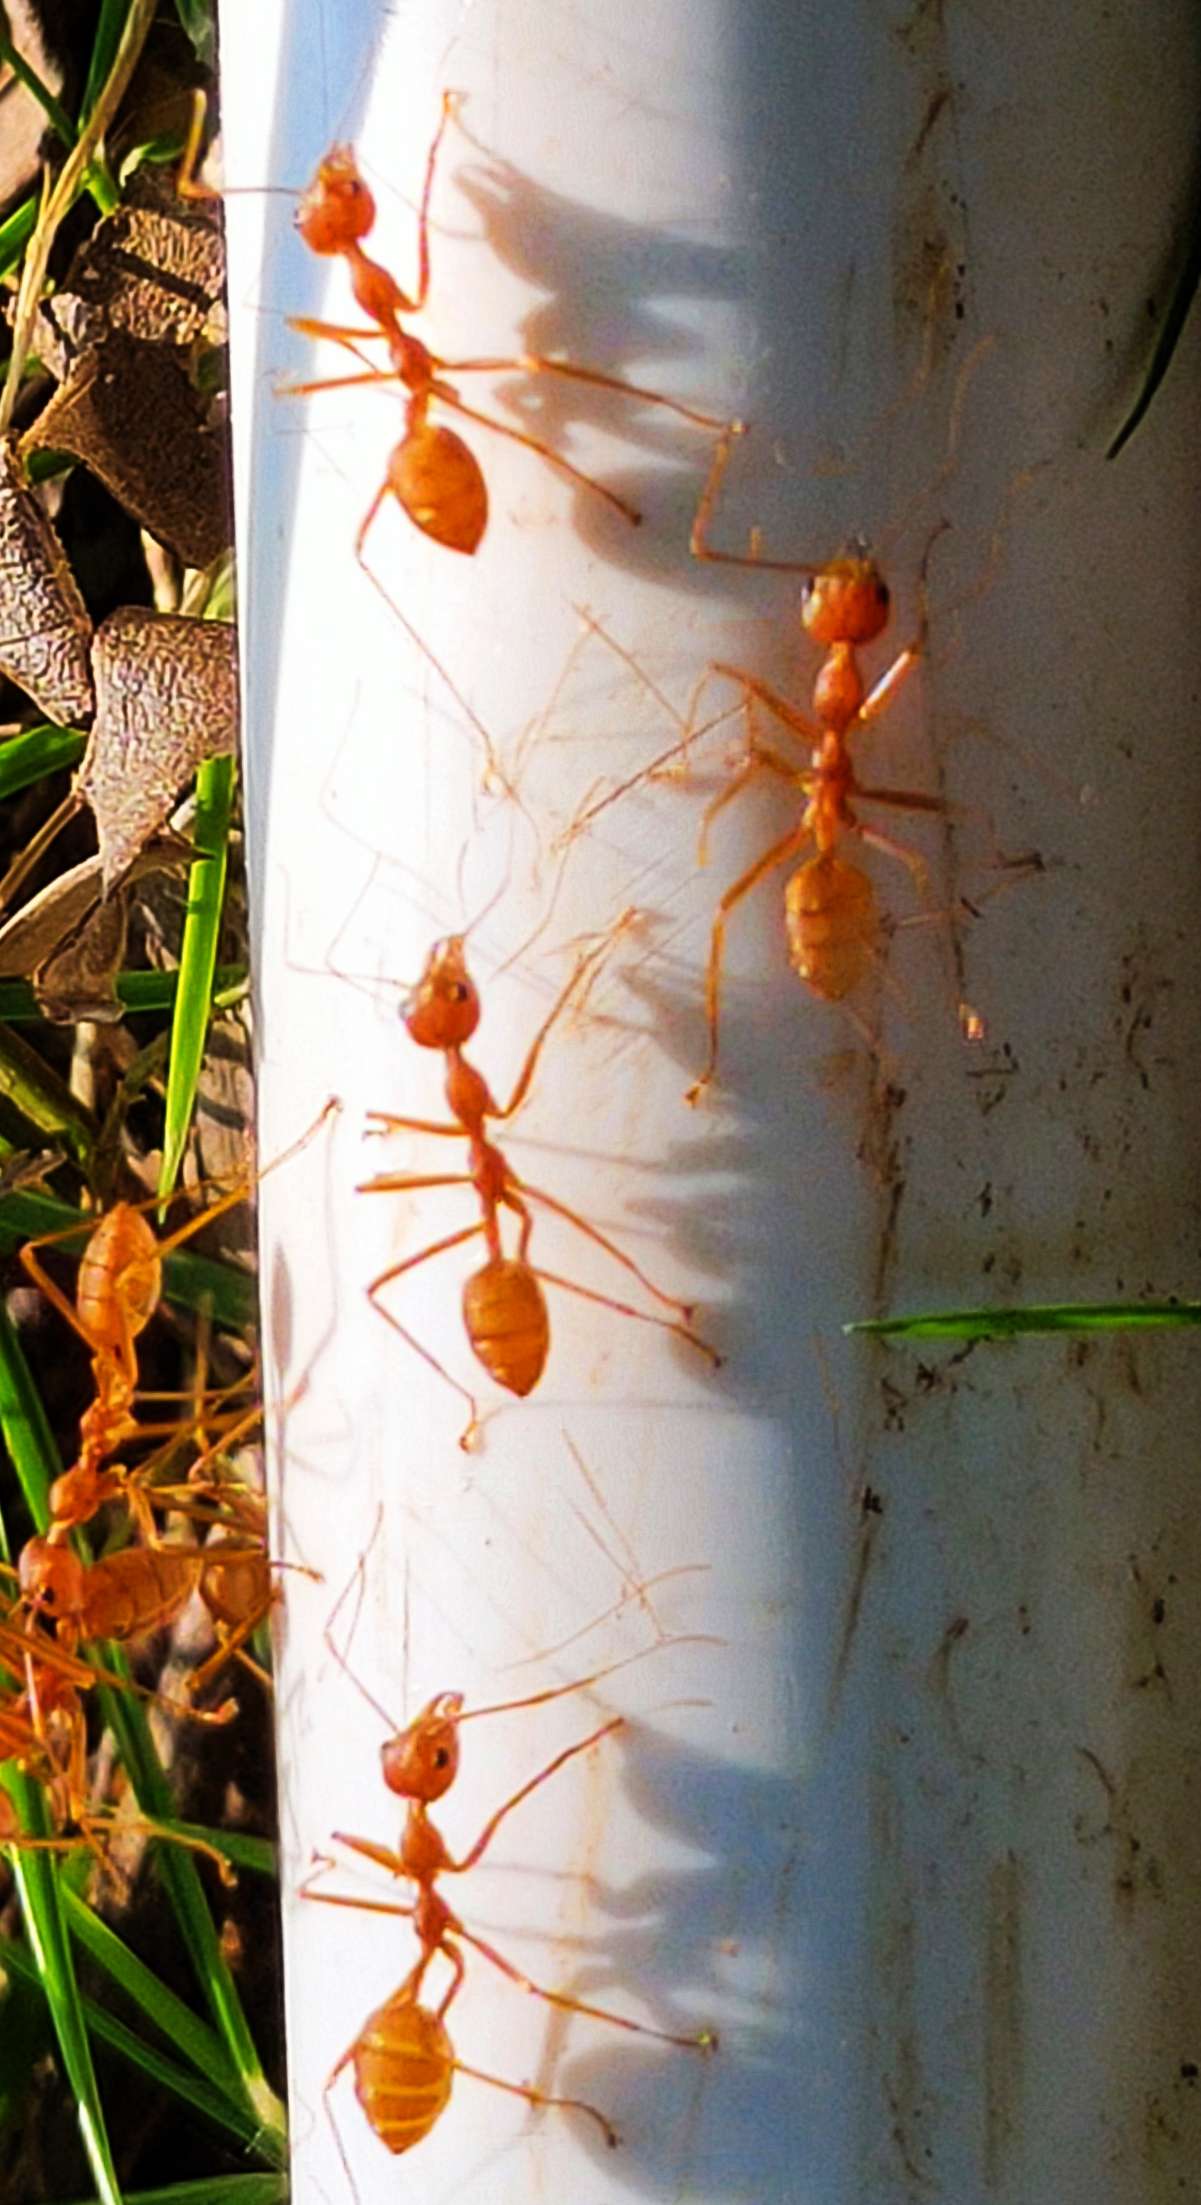 5、红蚂蚁的食物婚配繁殖寿命:请问红蚂蚁吃什么？